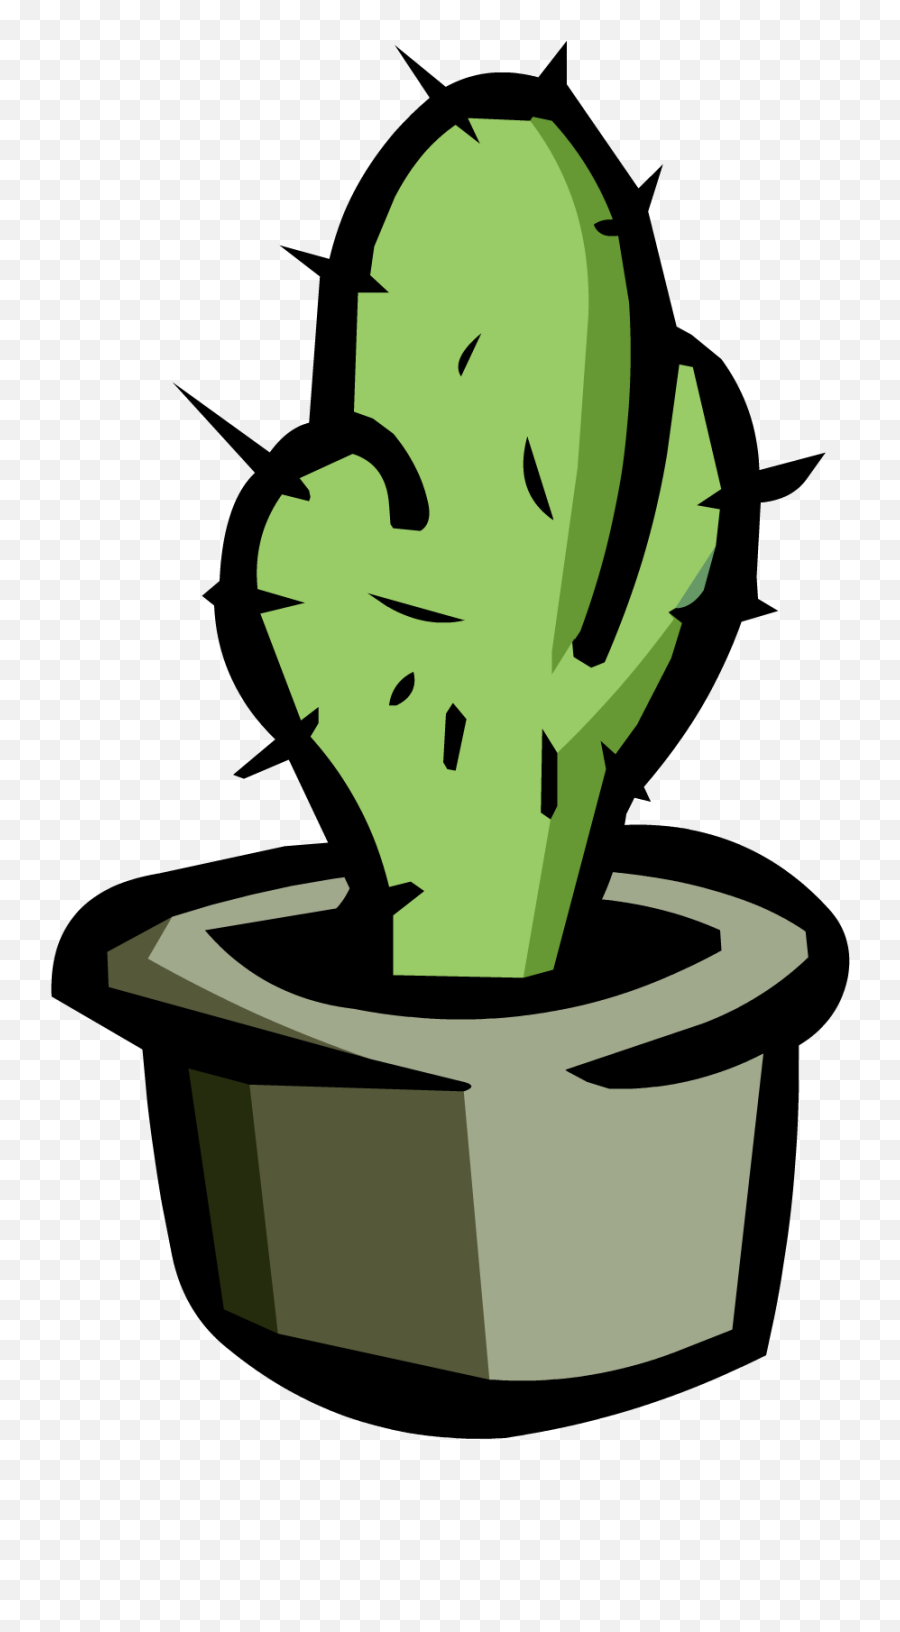 Transparent Background Cactus Clipart - Clipart Transparent Background Cactus Png Emoji,Cactus Clipart